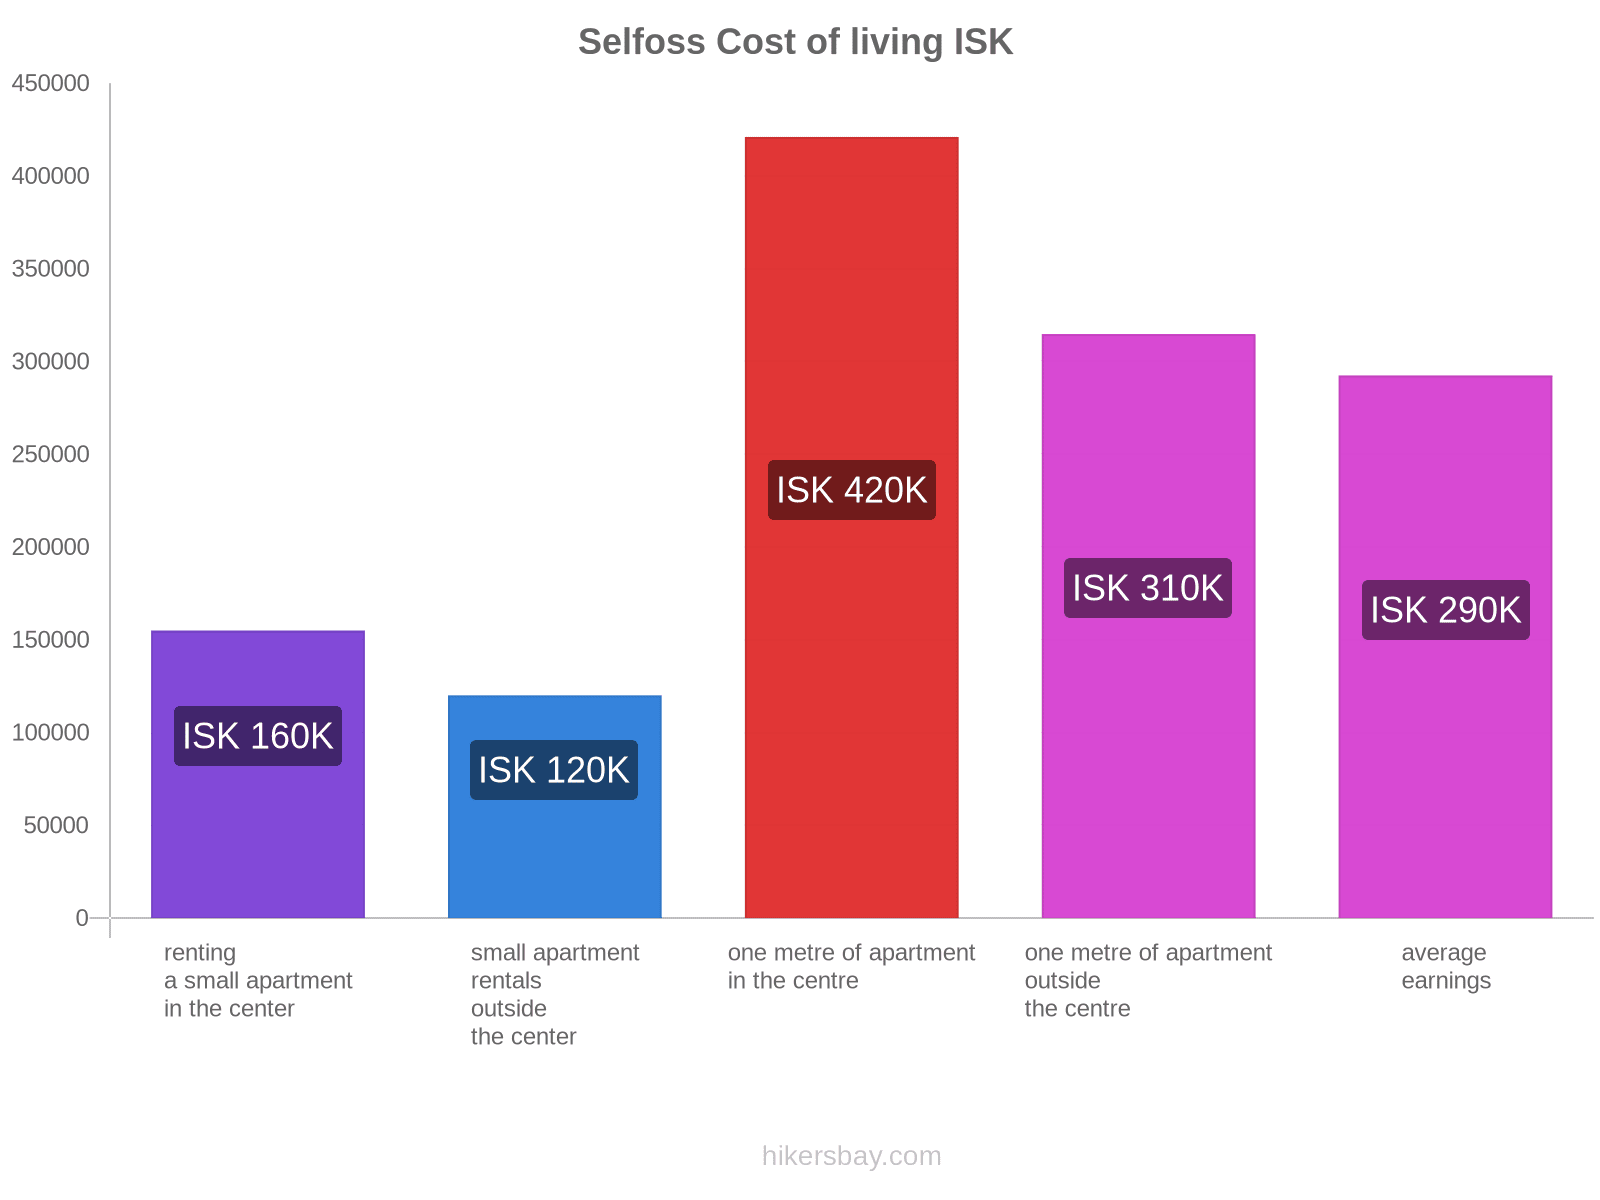 Selfoss cost of living hikersbay.com